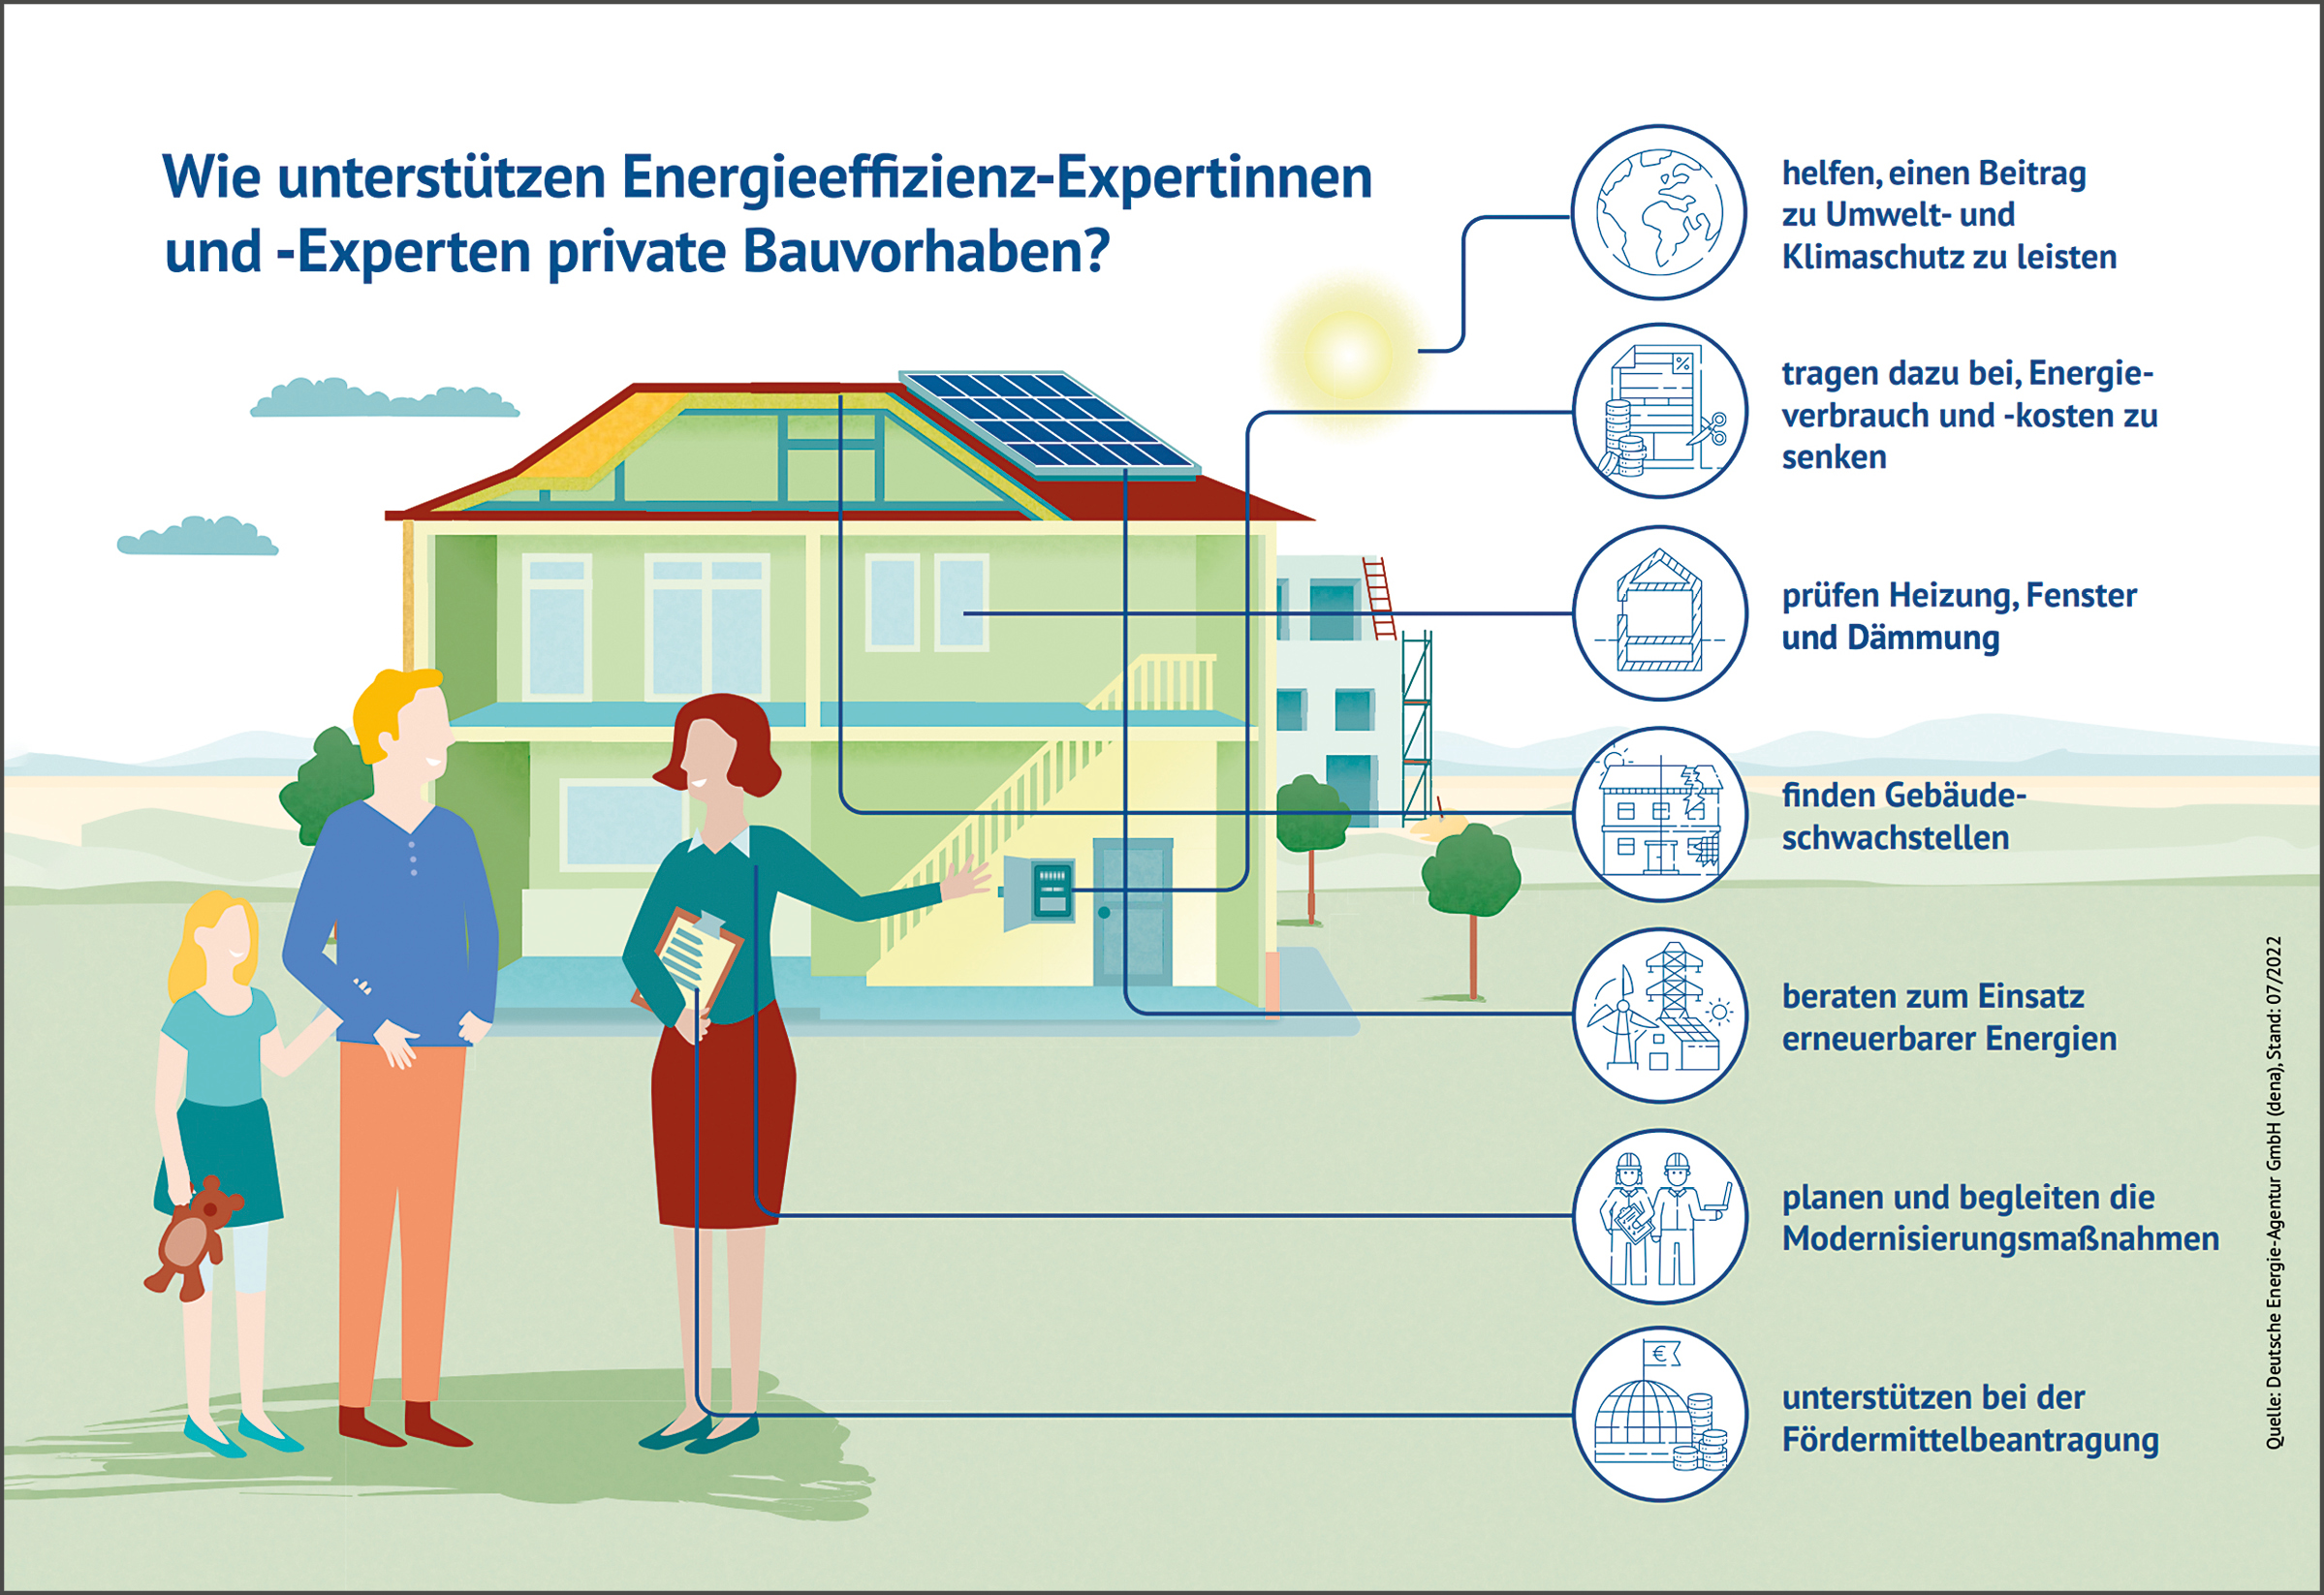 Energieeffizienz-Experten-sanierung-wohngebaeude